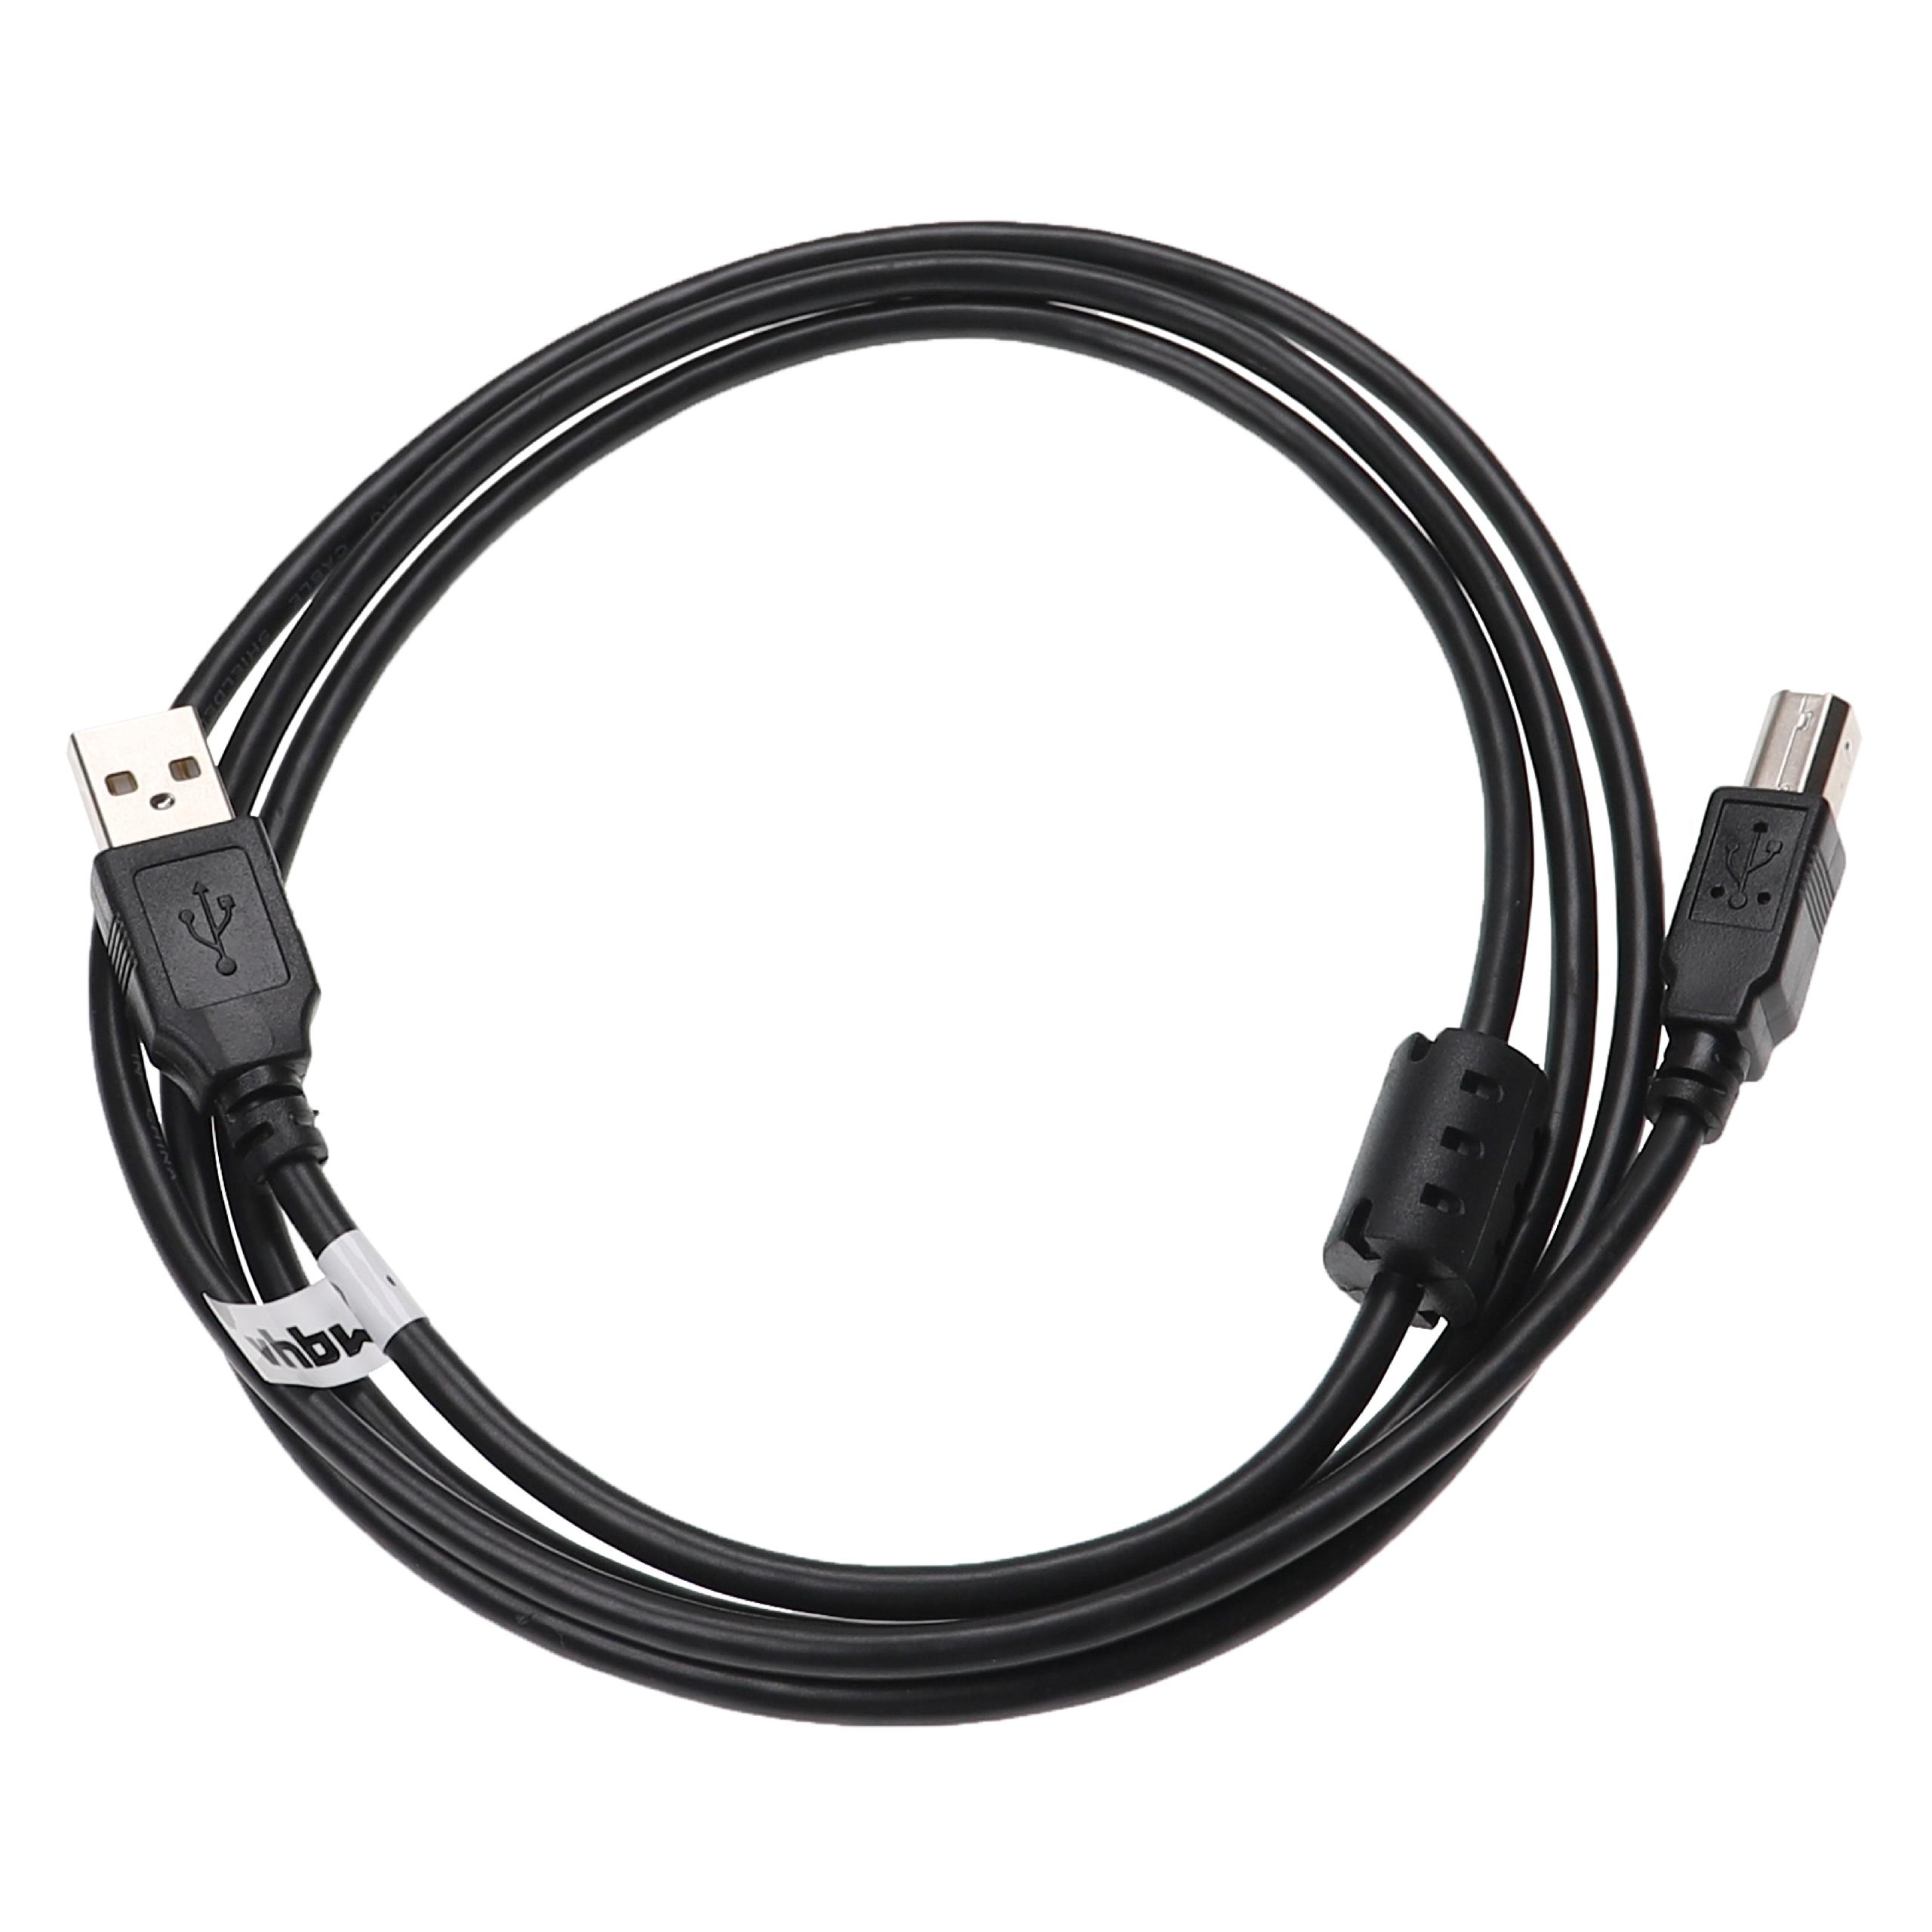 Vhbw cavo della stampante cavo per scanner cavo adattatore da USB A a USB B  - 1,5 m, nero